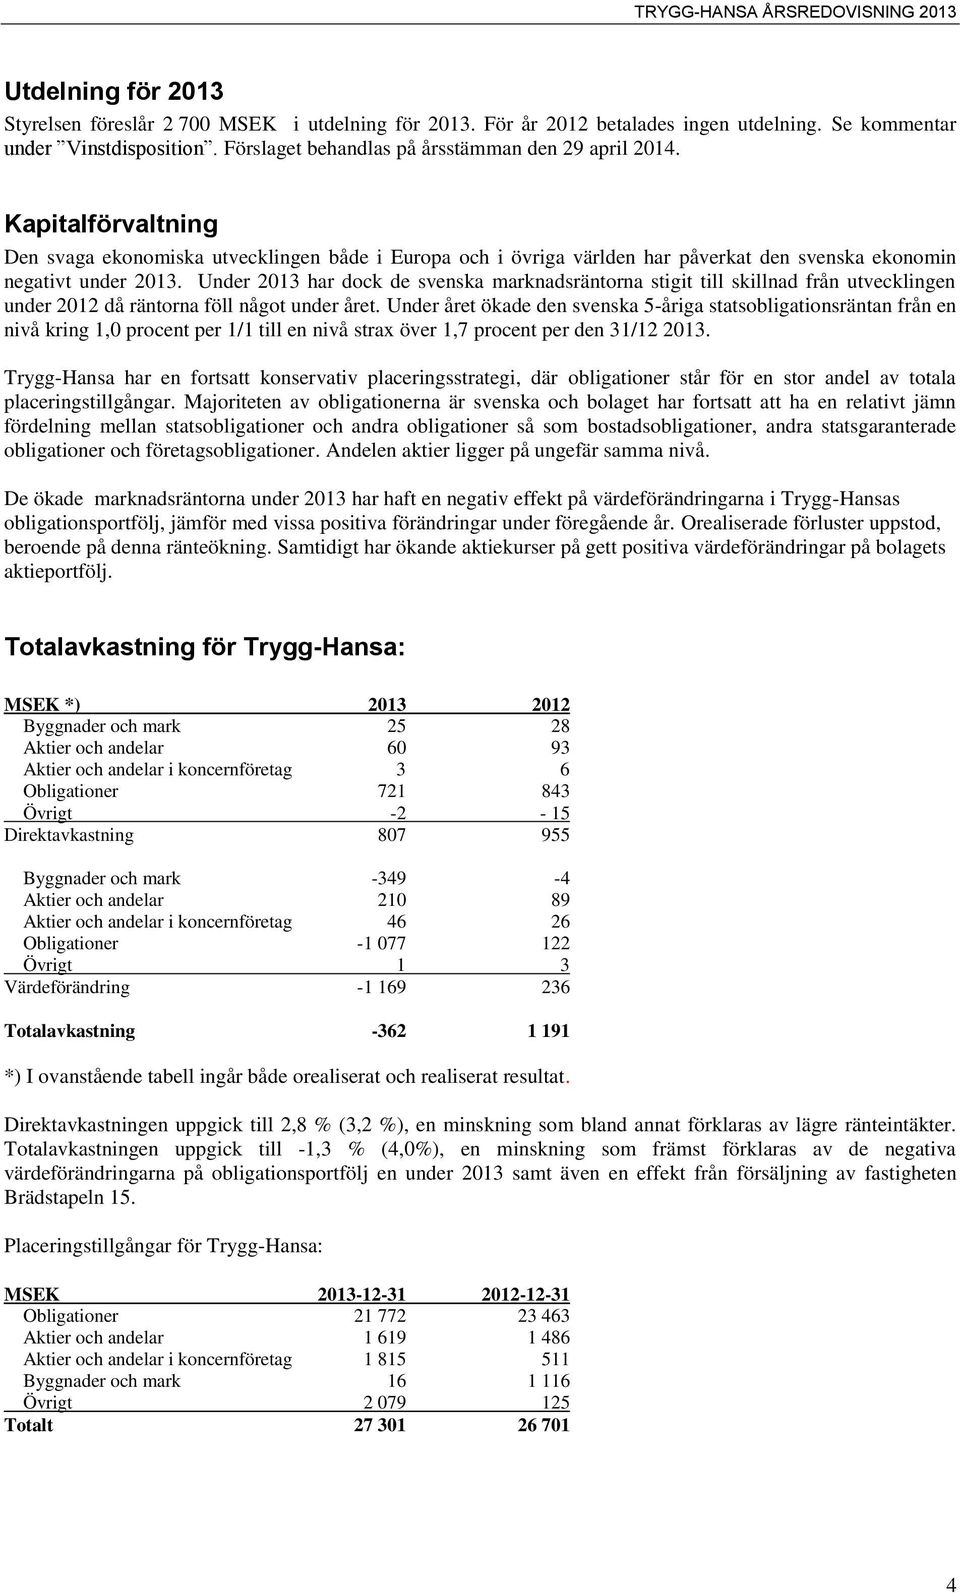 Under 2013 har dock de svenska marknadsräntorna stigit till skillnad från utvecklingen under 2012 då räntorna föll något under året.